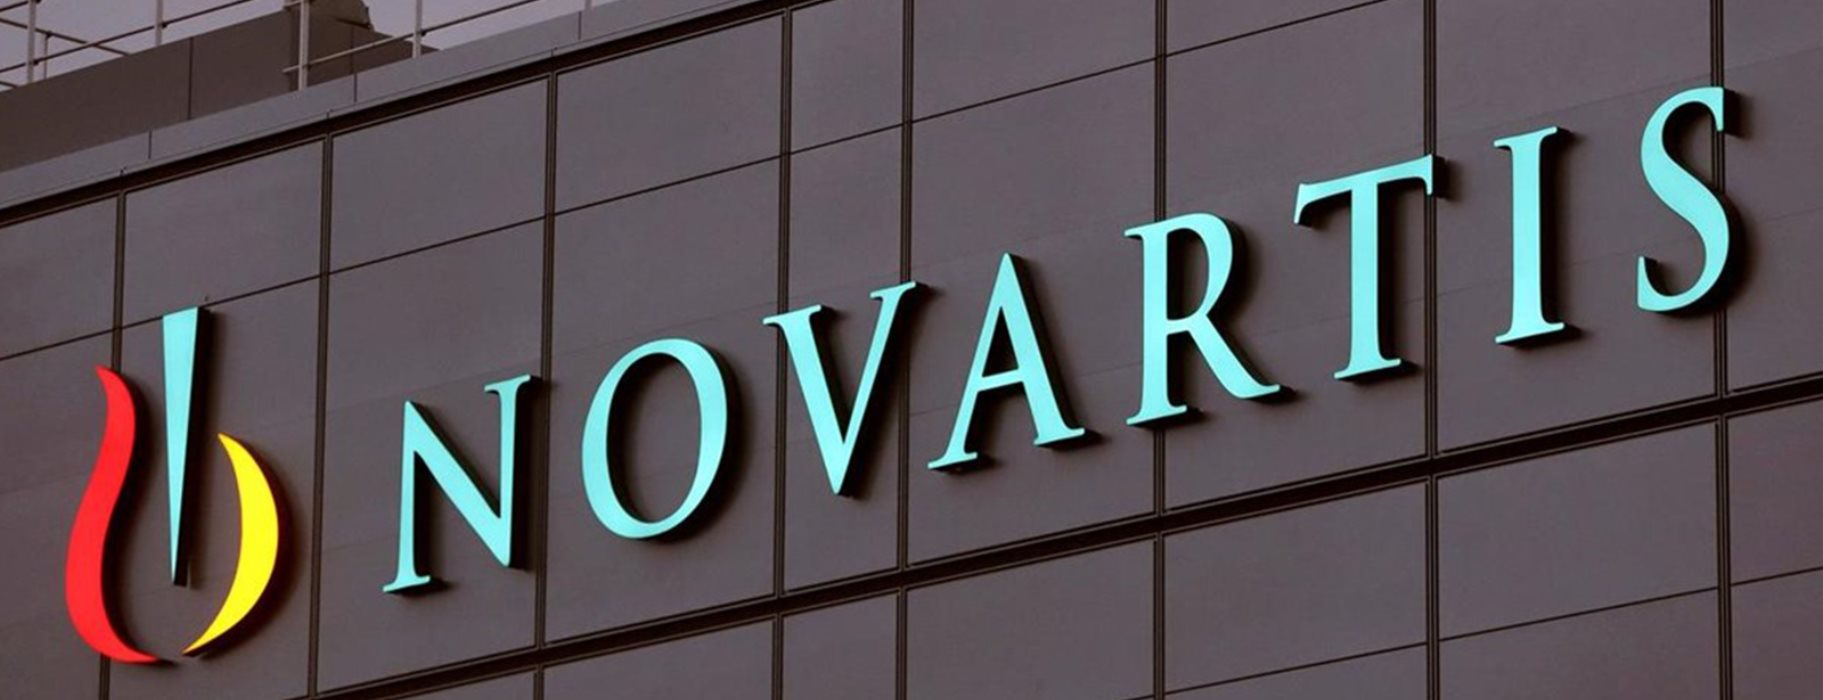 Εξωδικαστικός συμβιβασμός για Novartis στις ΗΠΑ: Καταβάλλει 347 εκατ. δολάρια και «ξεπλένει» τα πολιτικά πρόσωπα